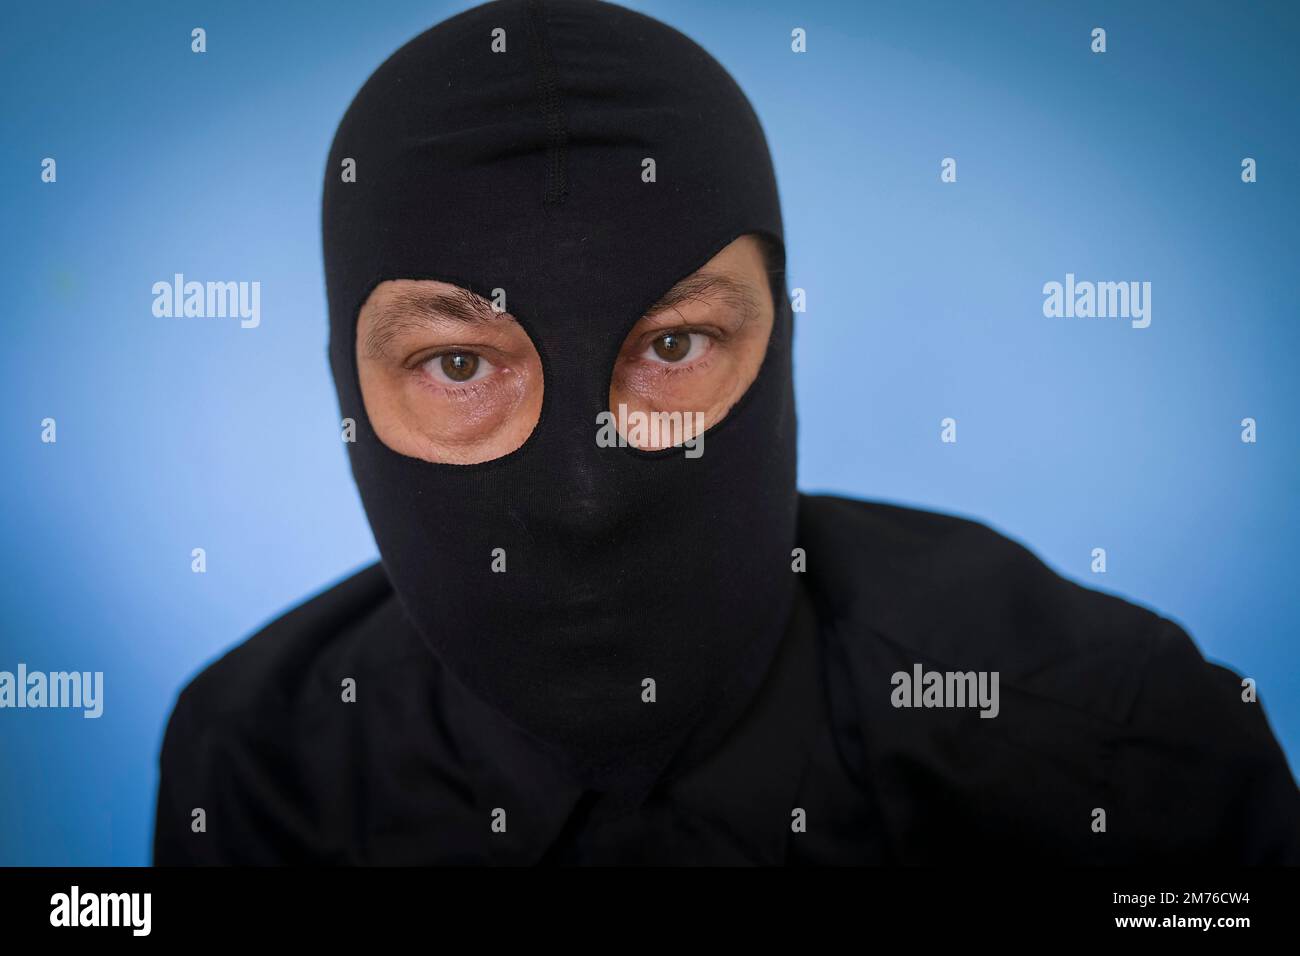 homme portant une chemise noire et une balalave noire sur fond bleu, hackker, terroriste, voleur, voleur, concept de craintes Banque D'Images